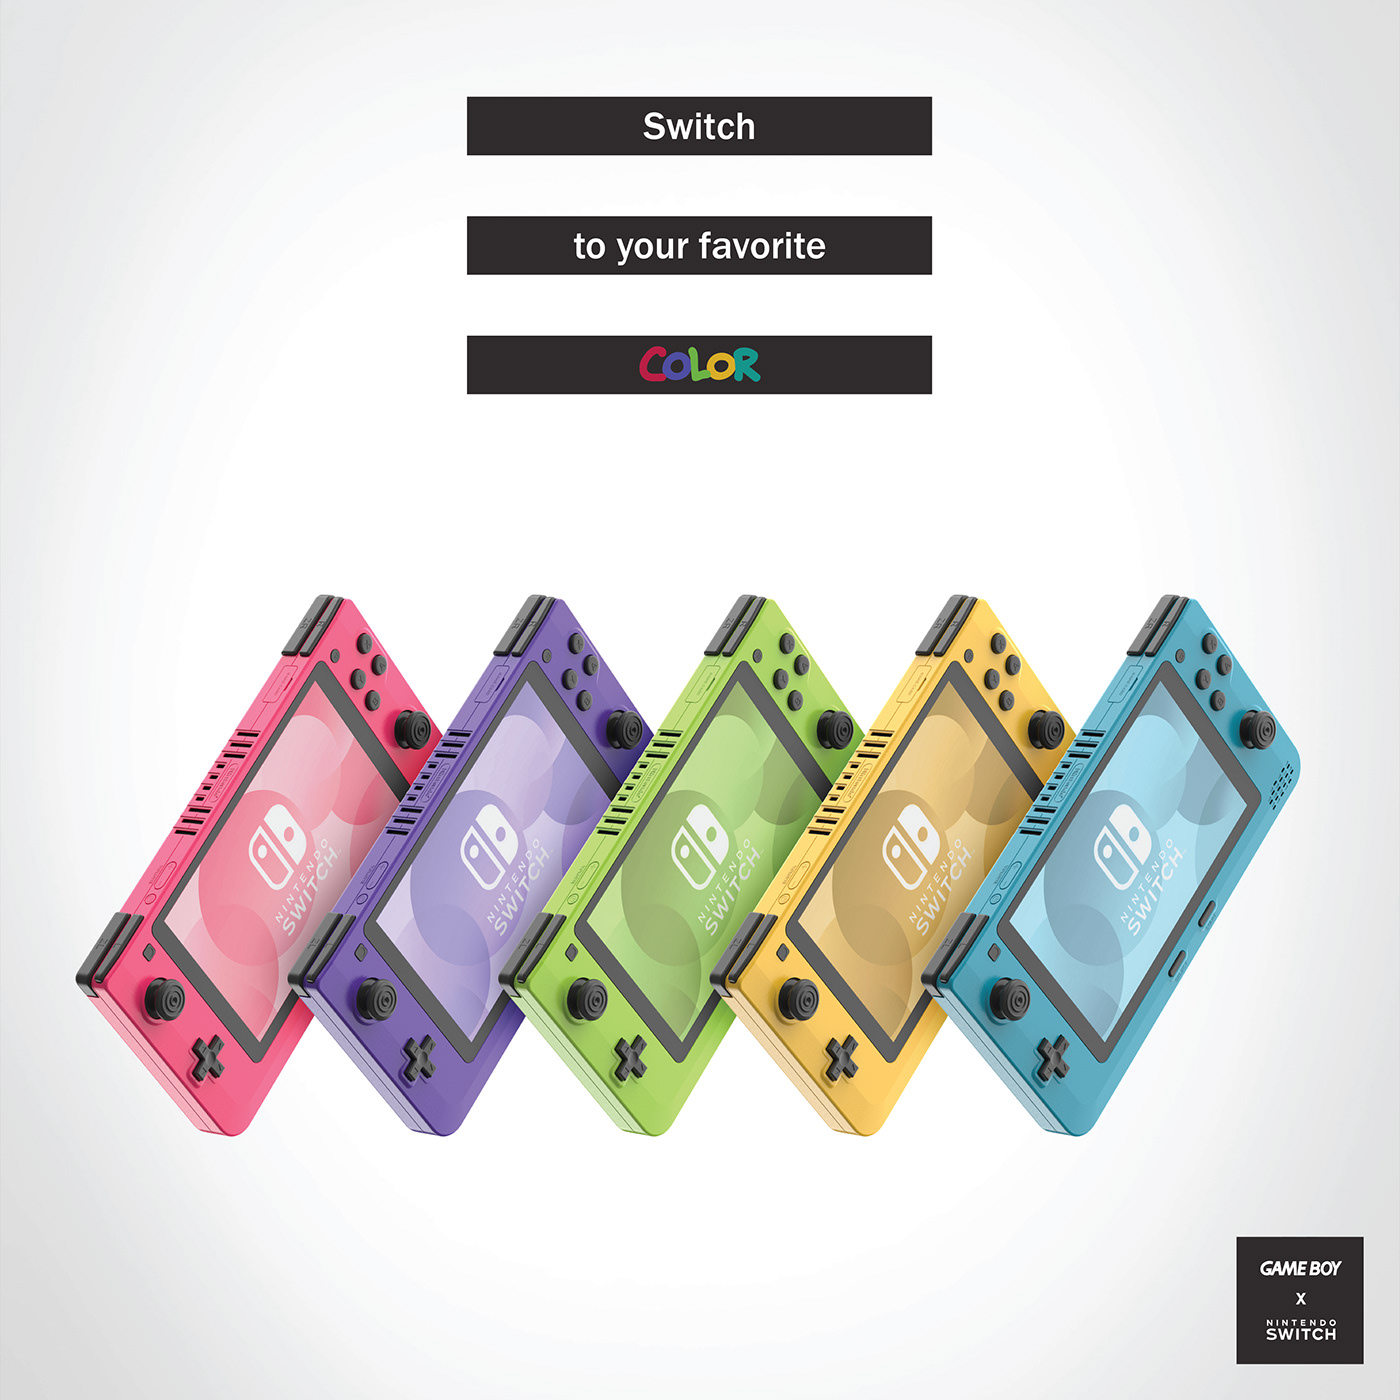 product design  Nintendo nintendo switch Gaming Solidworks keyshot 3d modeling gameboy